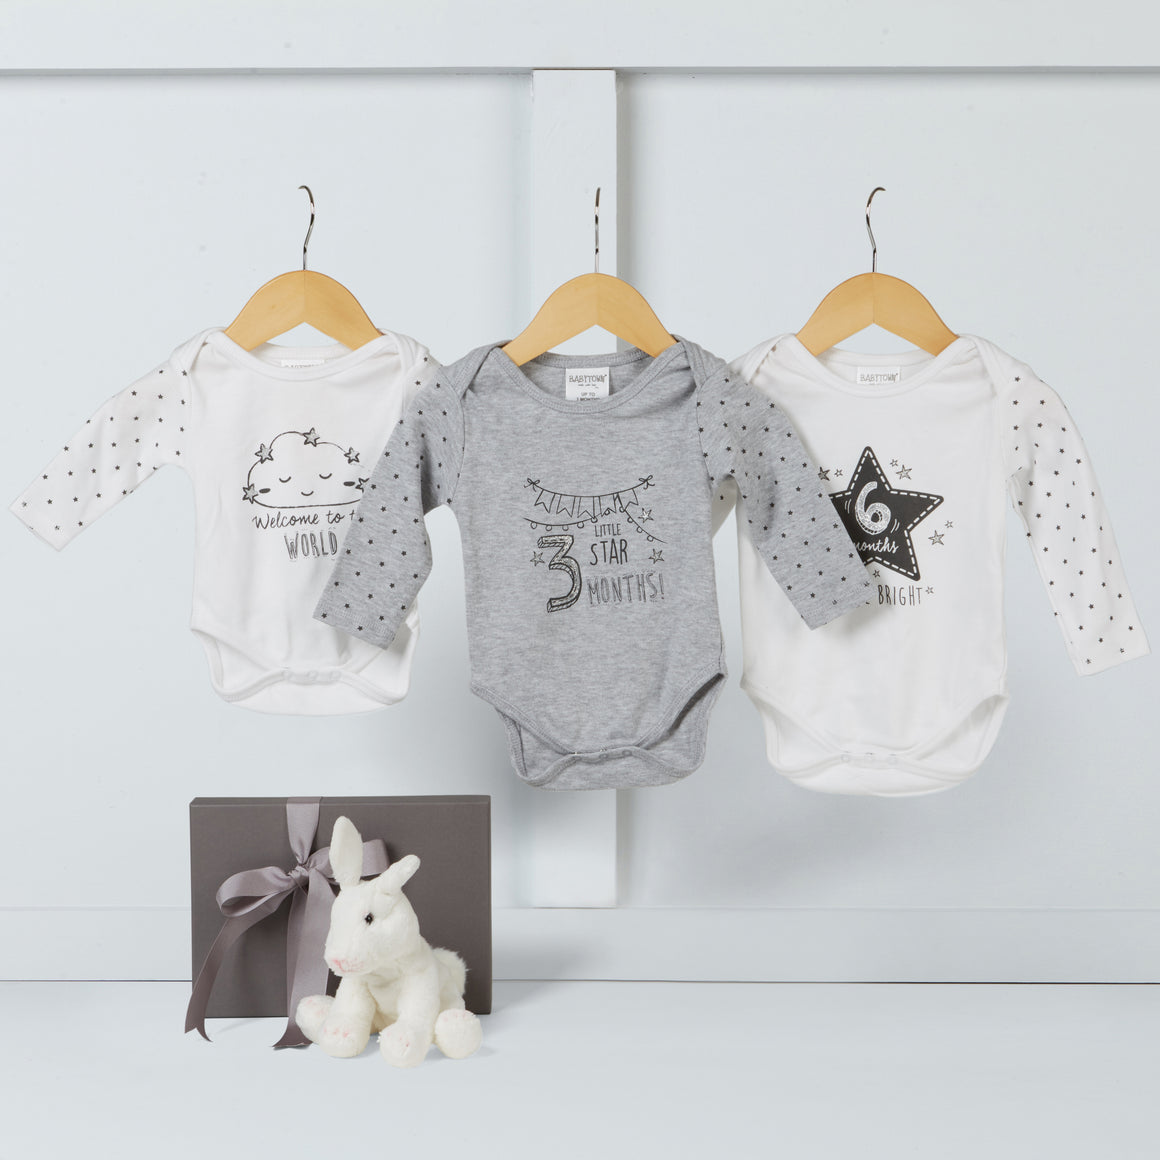 Cutie Pie Baby Gift Box Option 3 | Hamper Lounge 